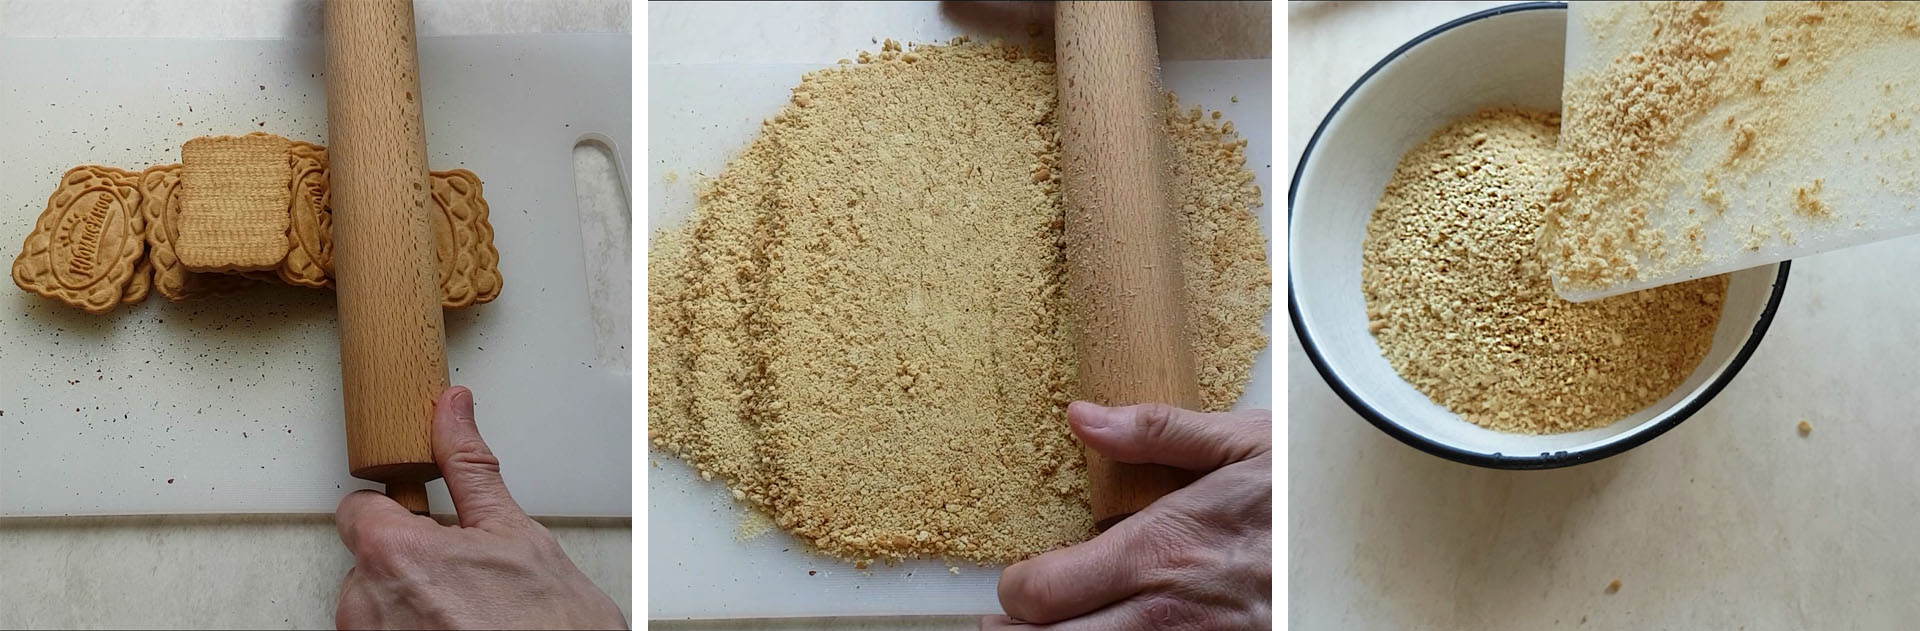 Второй шаг: процесс измельчения печенья при помощи скалки на кухонной доске и ссыпание в посуду с орехами.